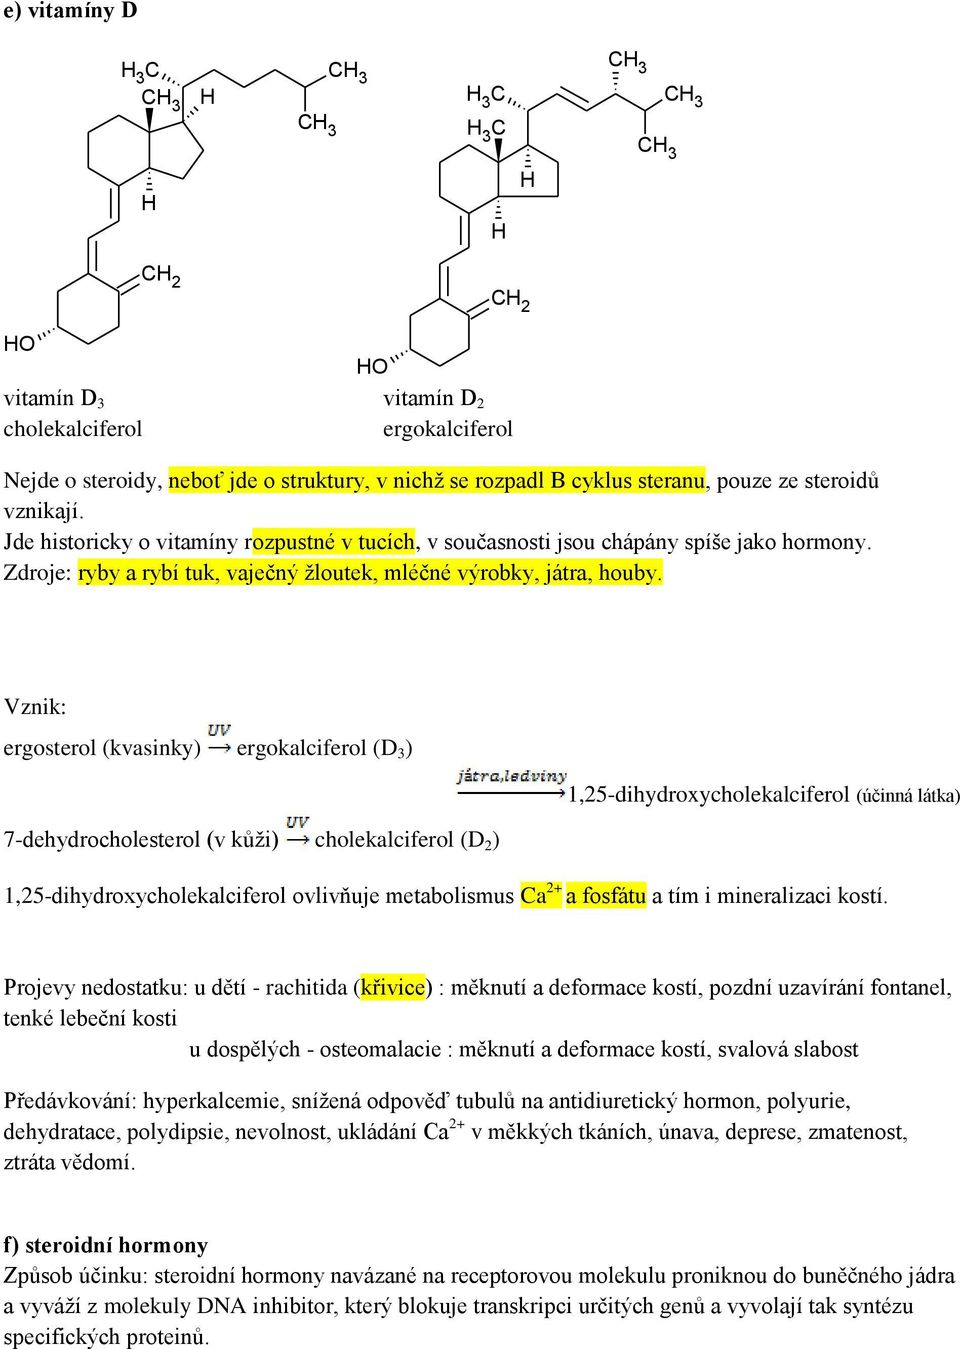 Vznik: ergosterol (kvasinky) ergokalciferol (D 3 ) 1,25-dihydroxycholekalciferol (účinná látka) 7-dehydrocholesterol (v kůži) cholekalciferol (D 2 ) 1,25-dihydroxycholekalciferol ovlivňuje